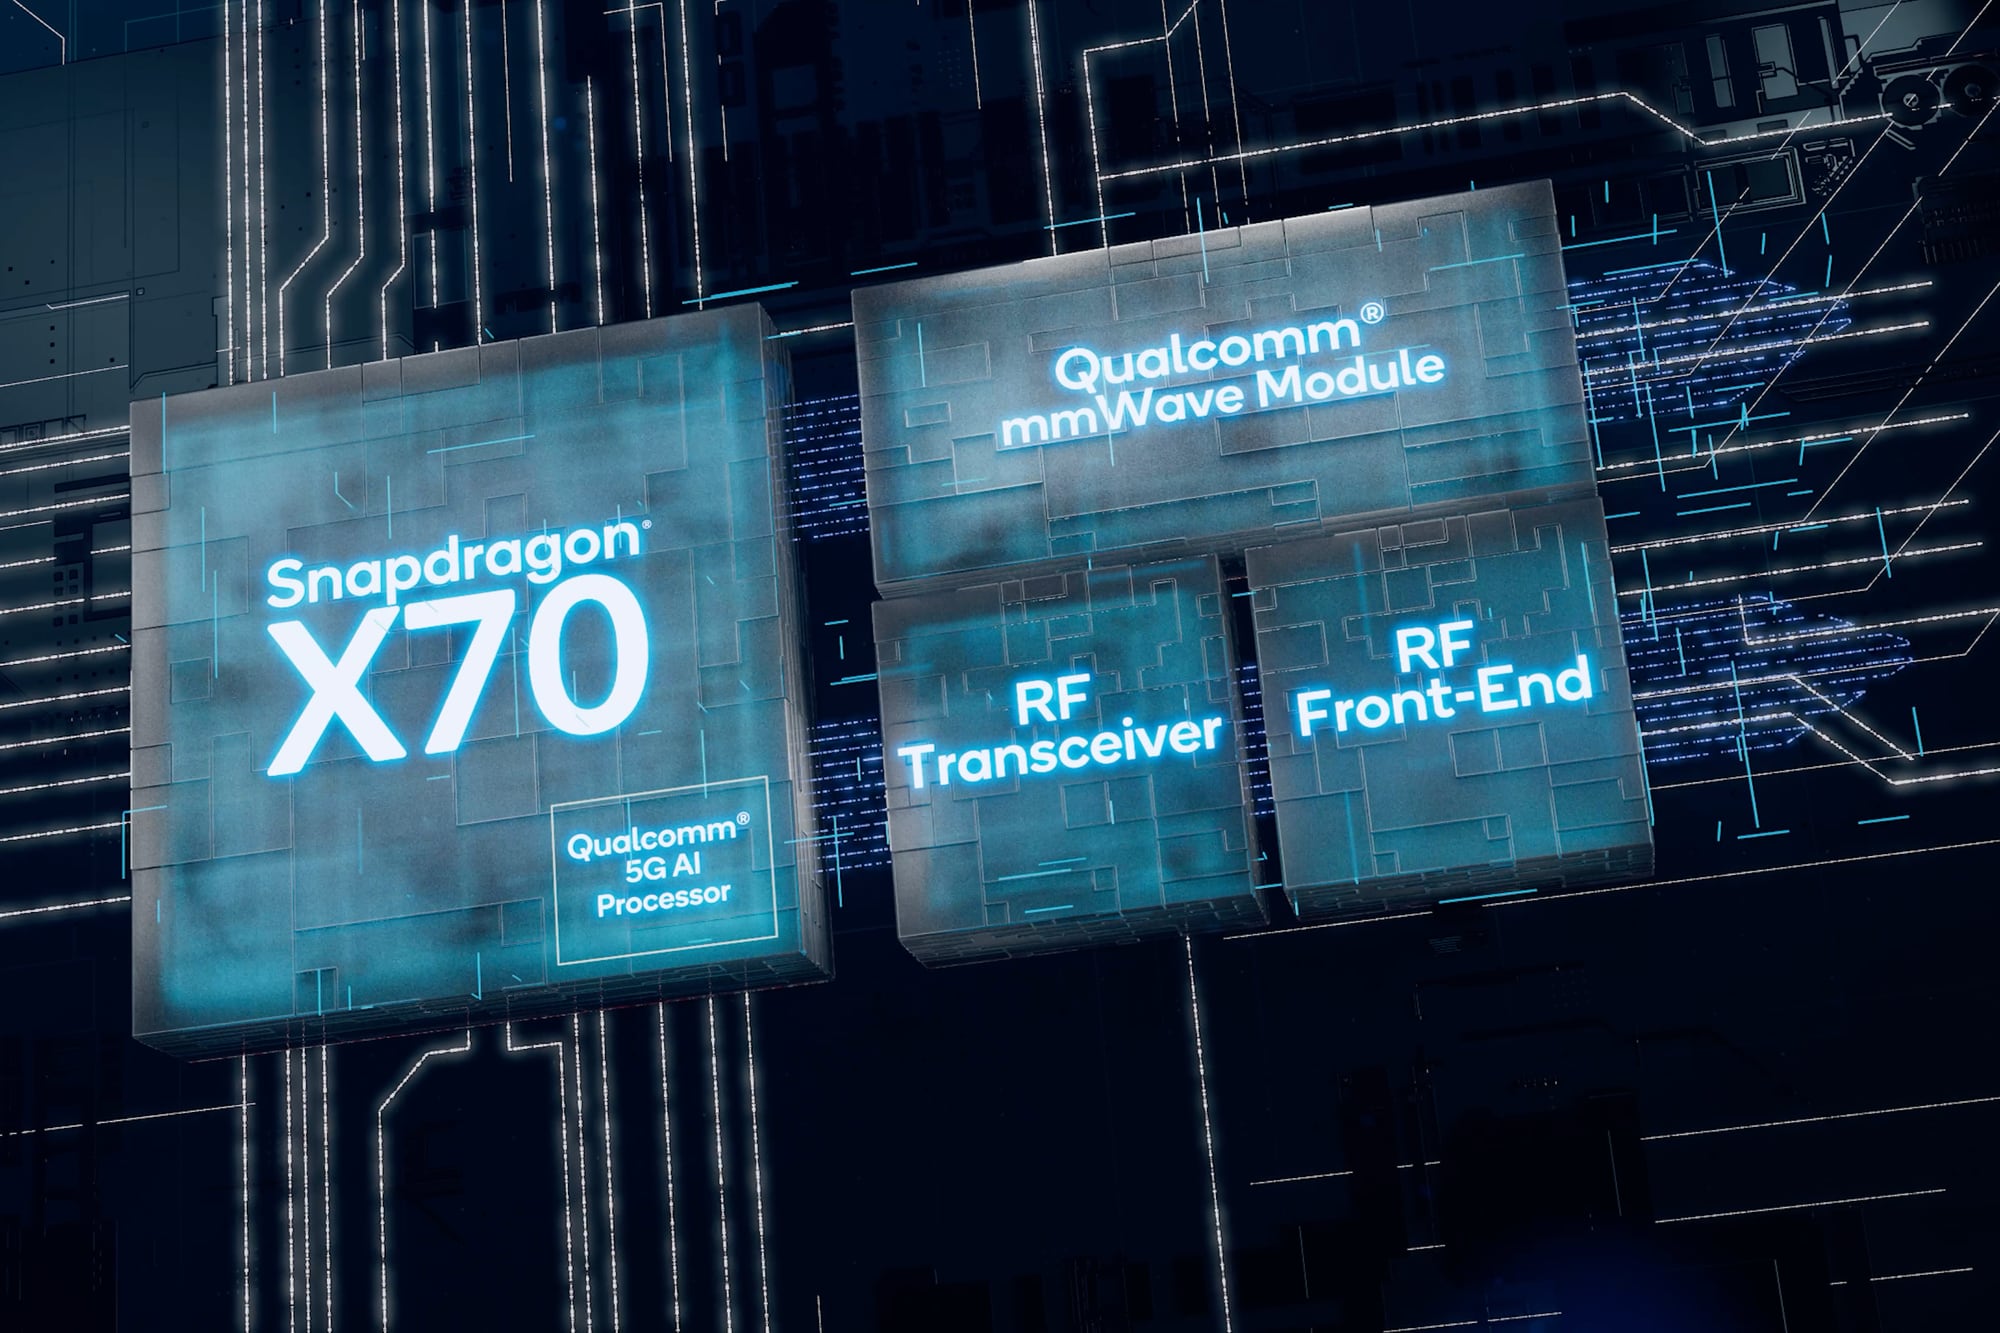 Imagem conceitual do chip Qualcomm Snapdragon X70 com módulos mmWave, AI e RF adicionais.